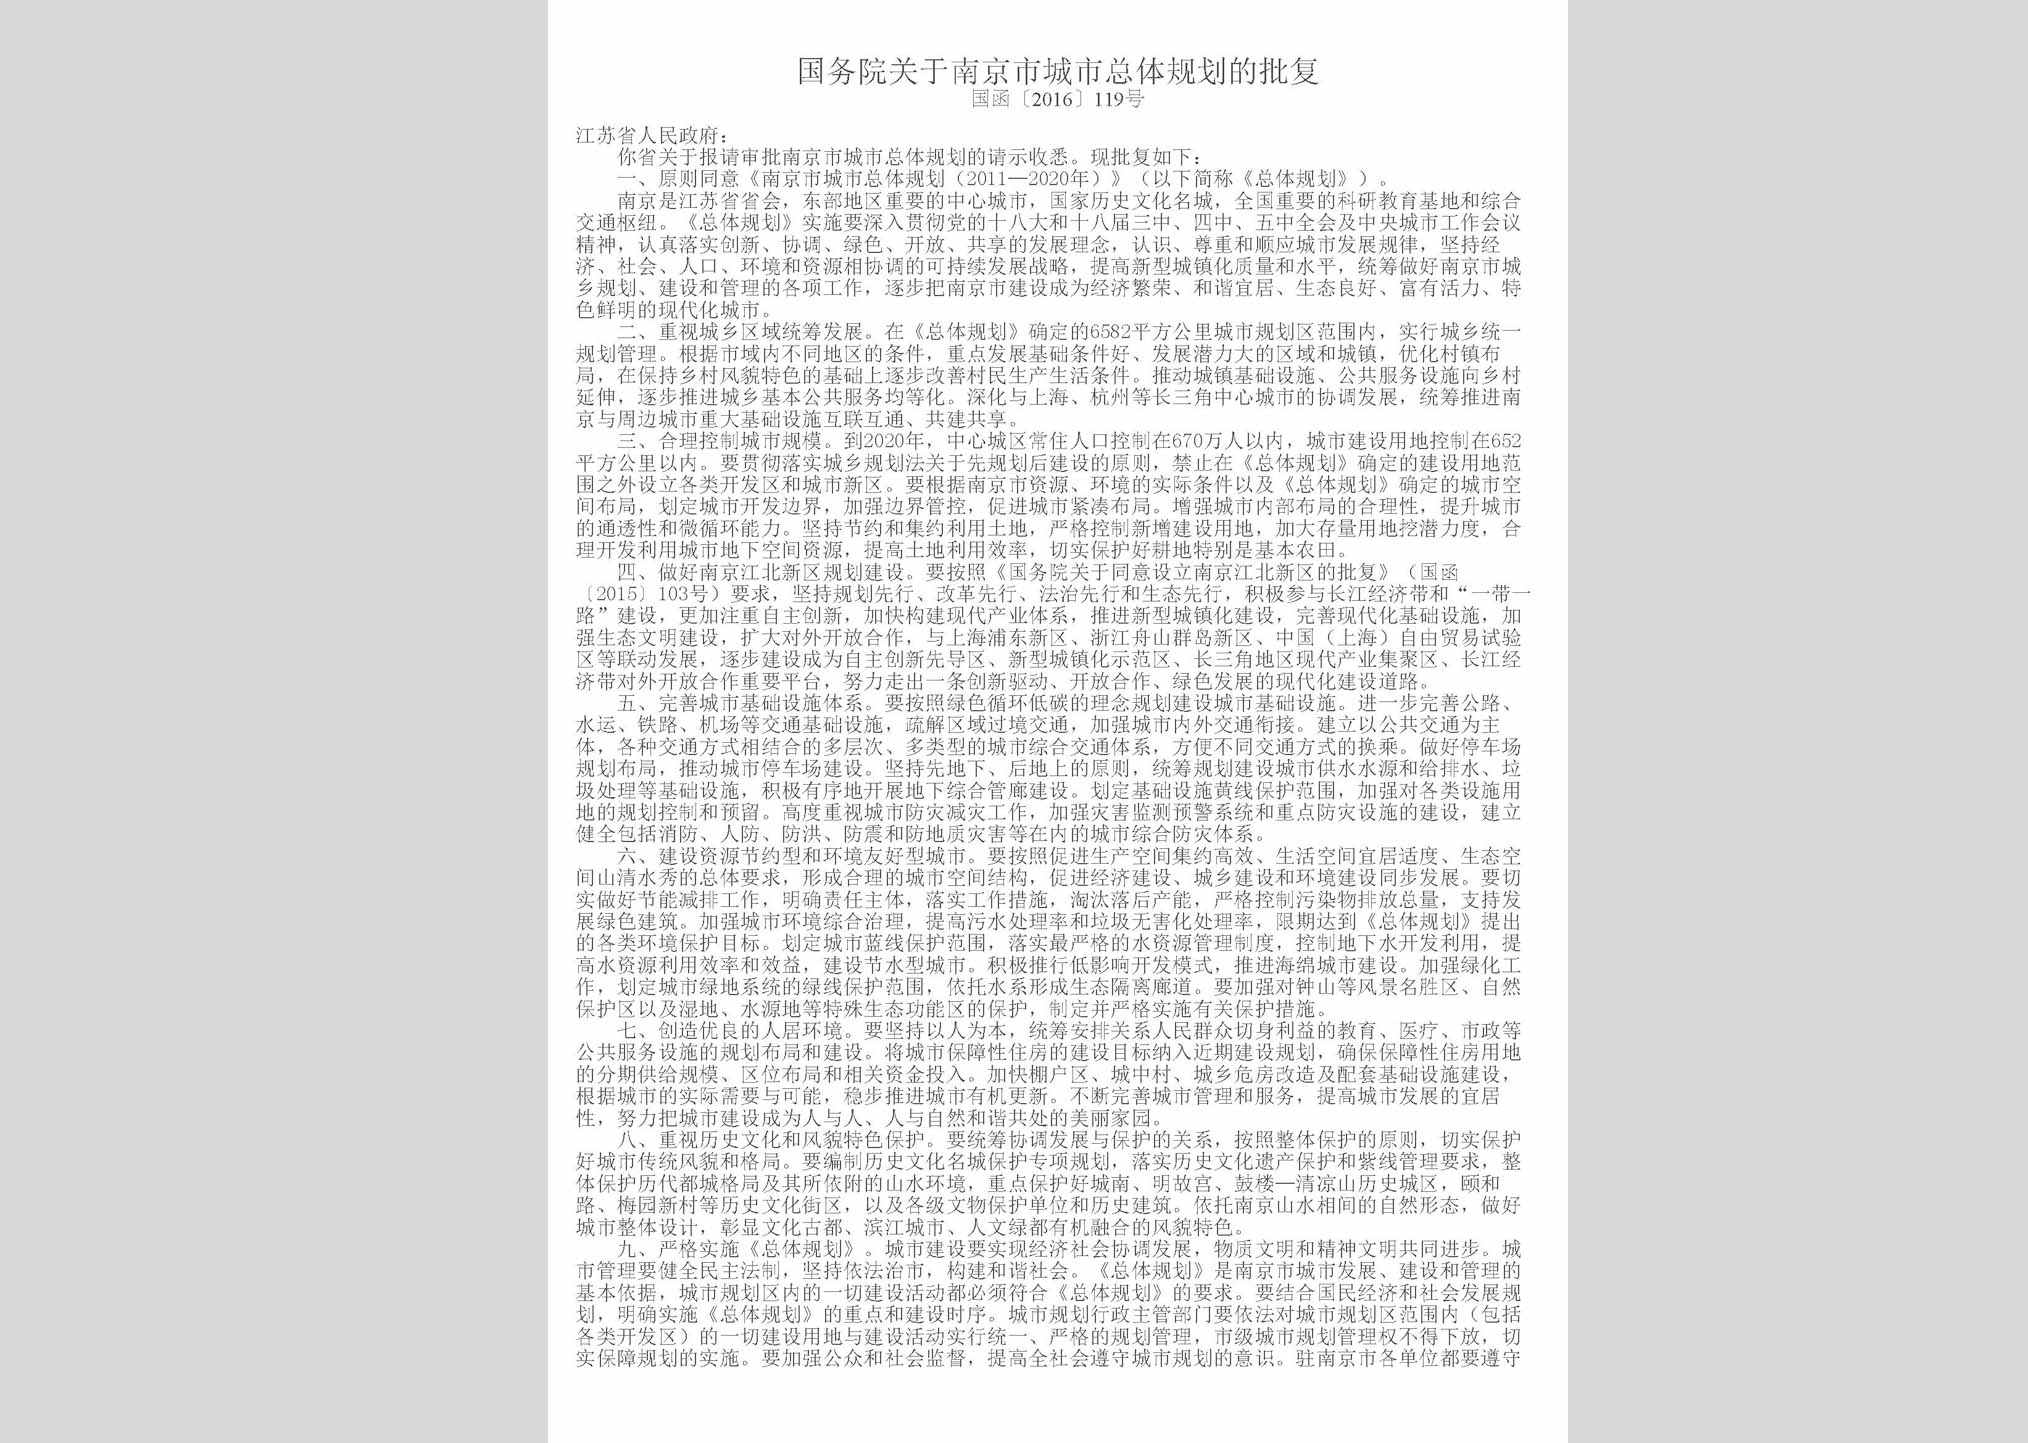 国函[2016]119号：国务院关于南京市城市总体规划的批复